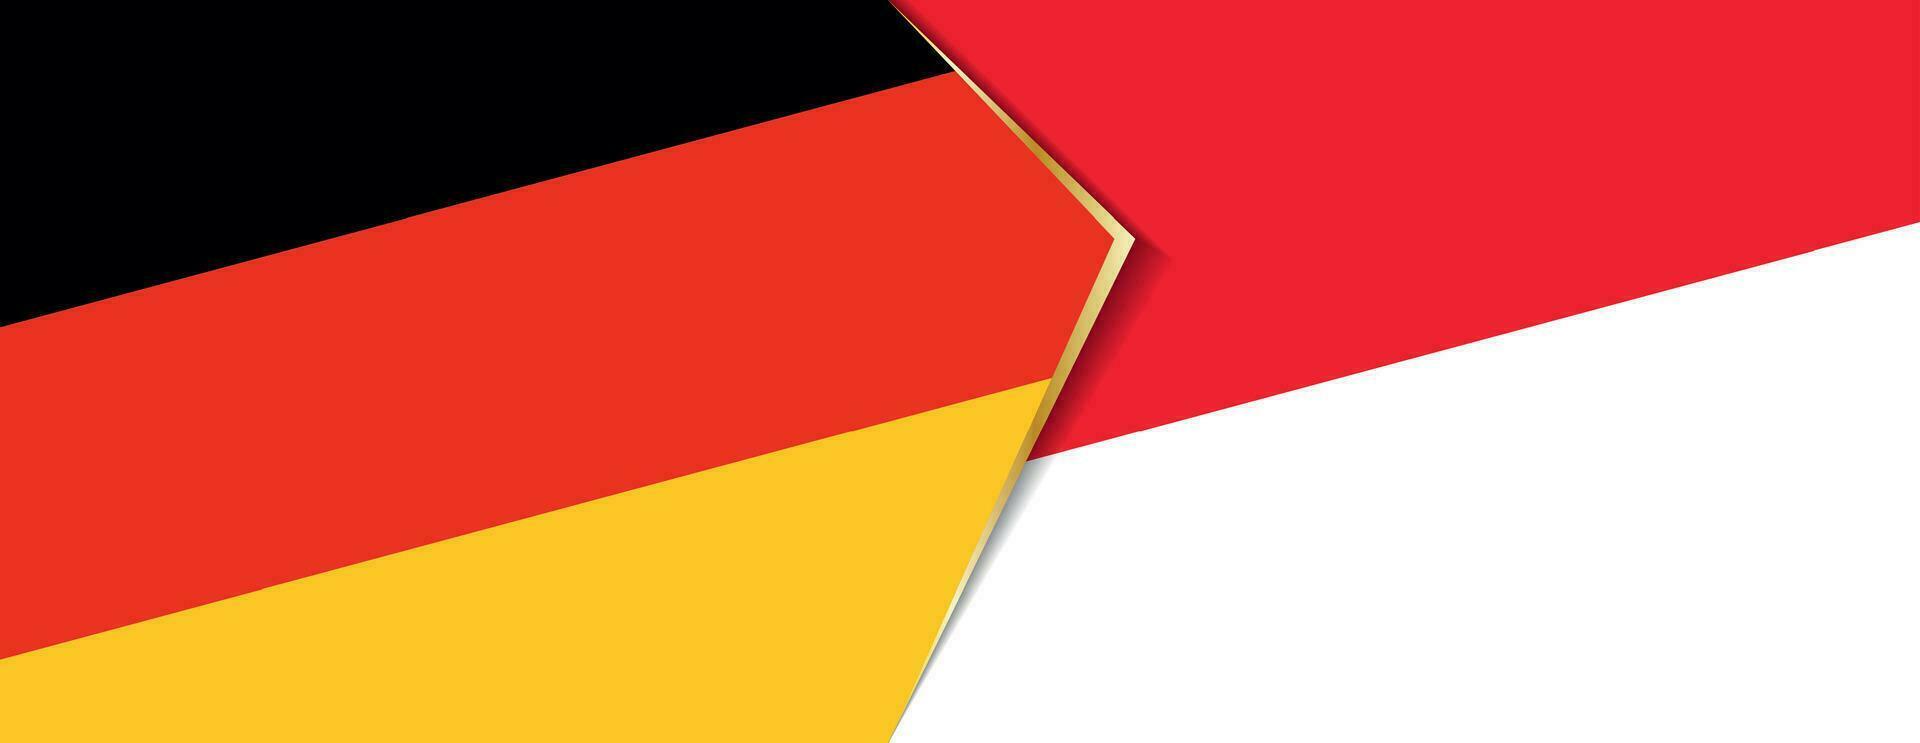 Alemania y Indonesia banderas, dos vector banderas